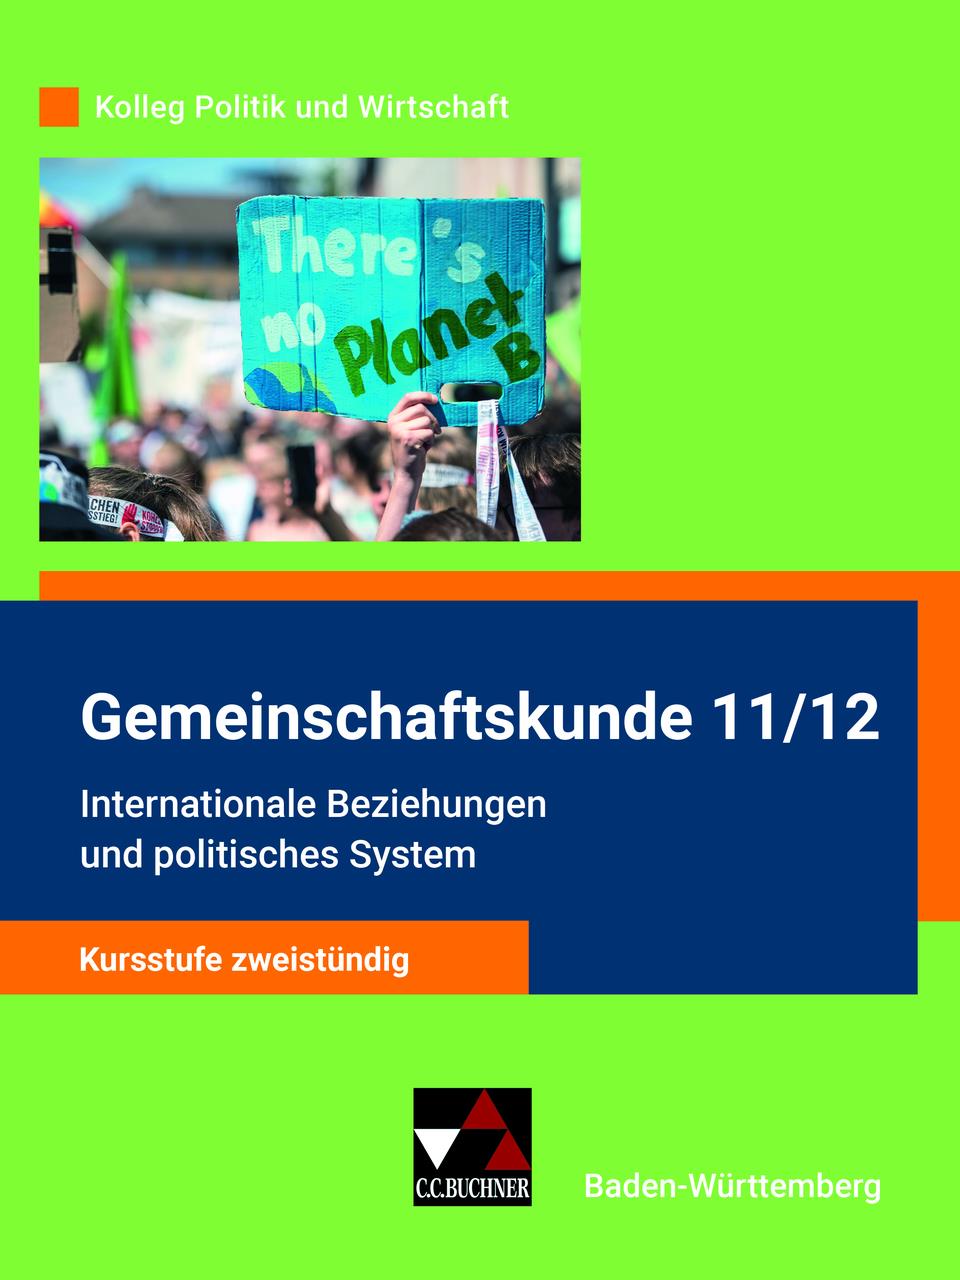 Kolleg Politik und Wirtschaft - Baden-Württemberg Gemeintschaftskunde 11-12